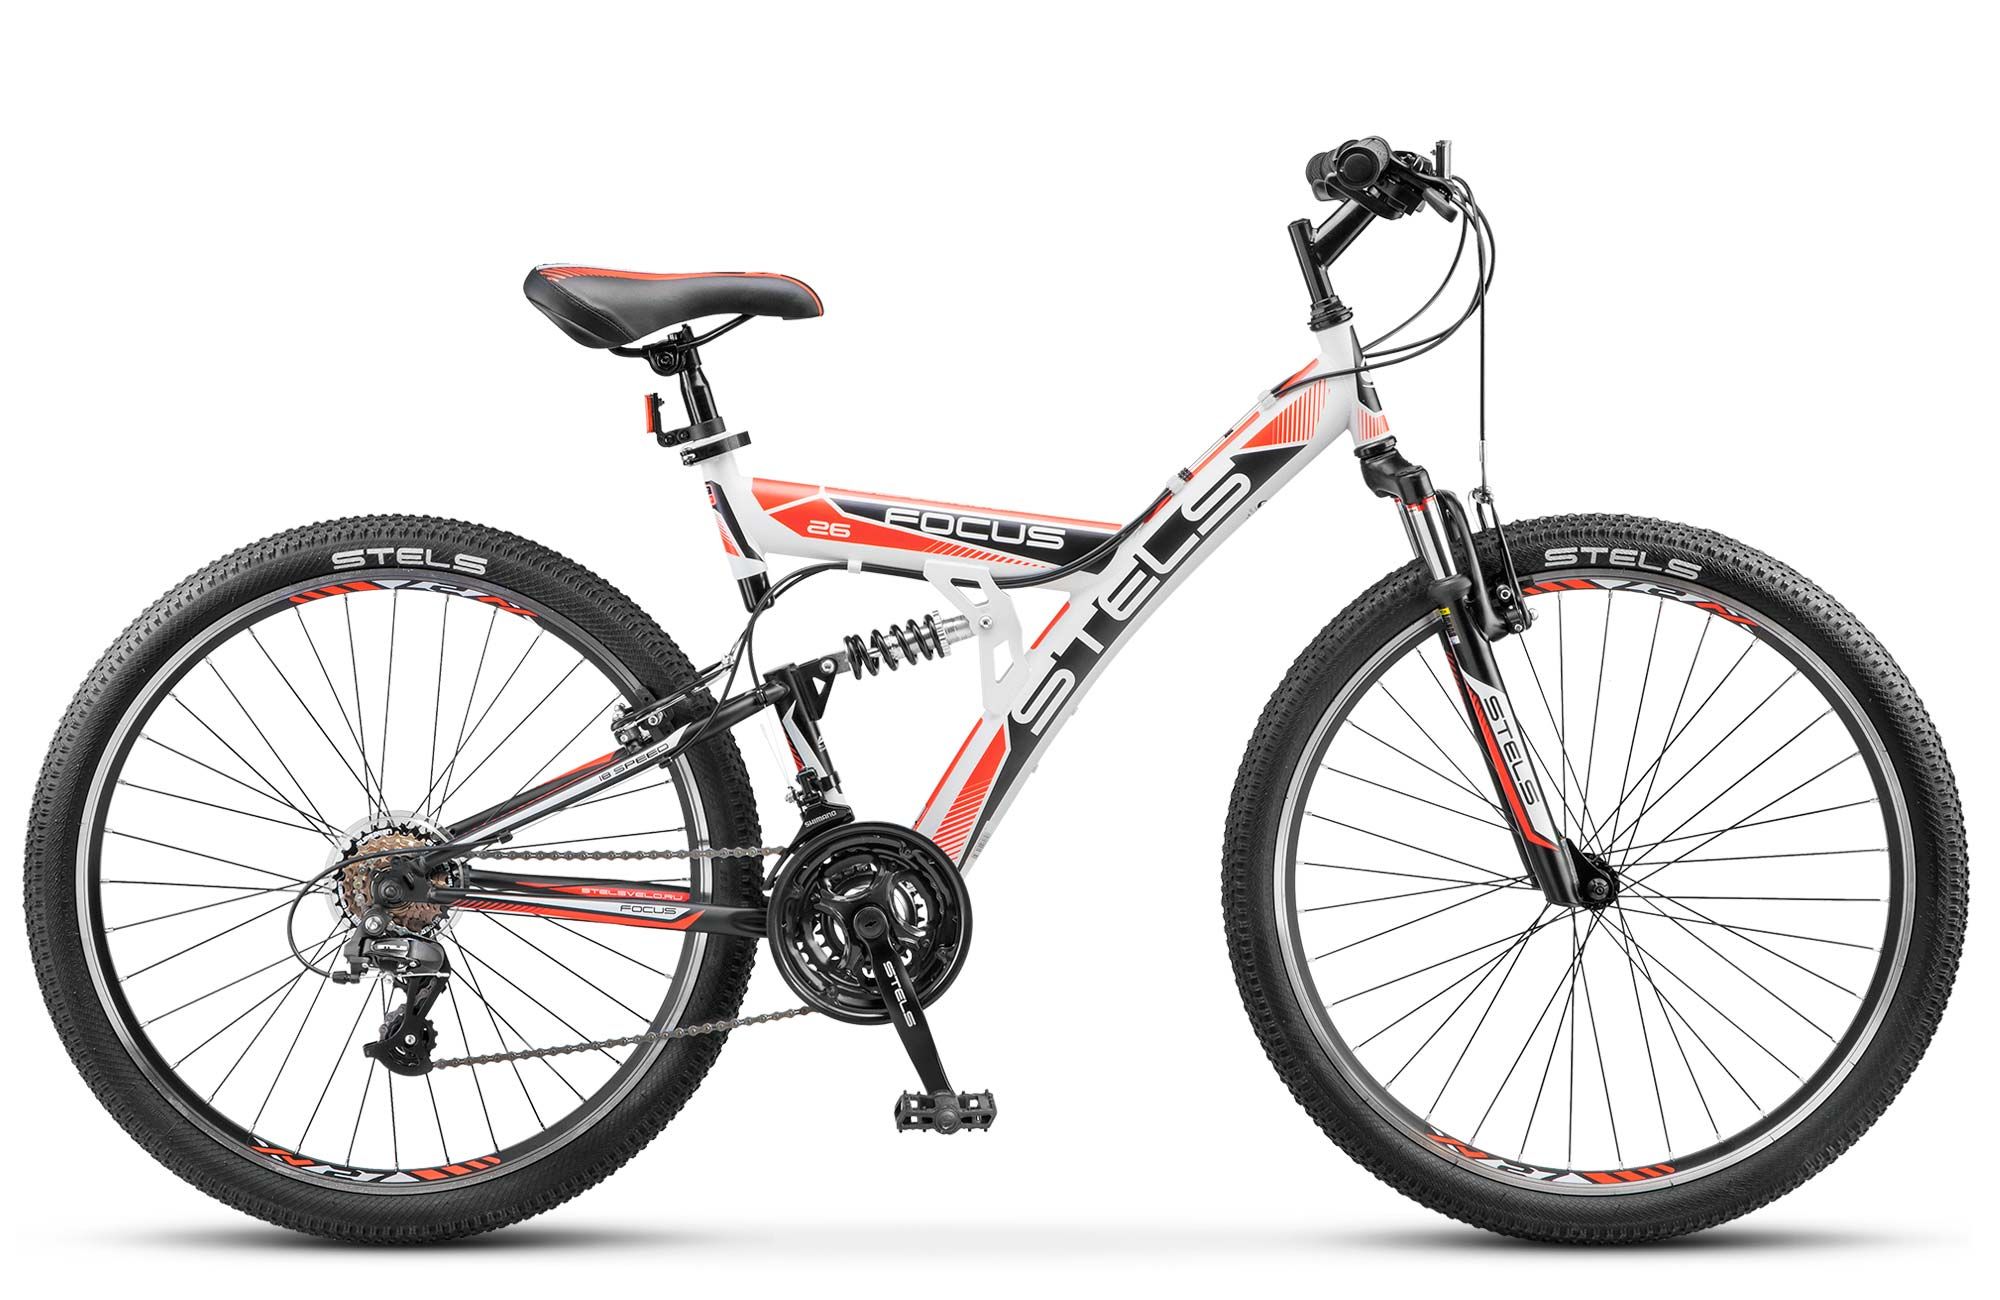  Отзывы о Двухподвесном велосипеде Stels Focus V 26 18-sp (V020) 2018